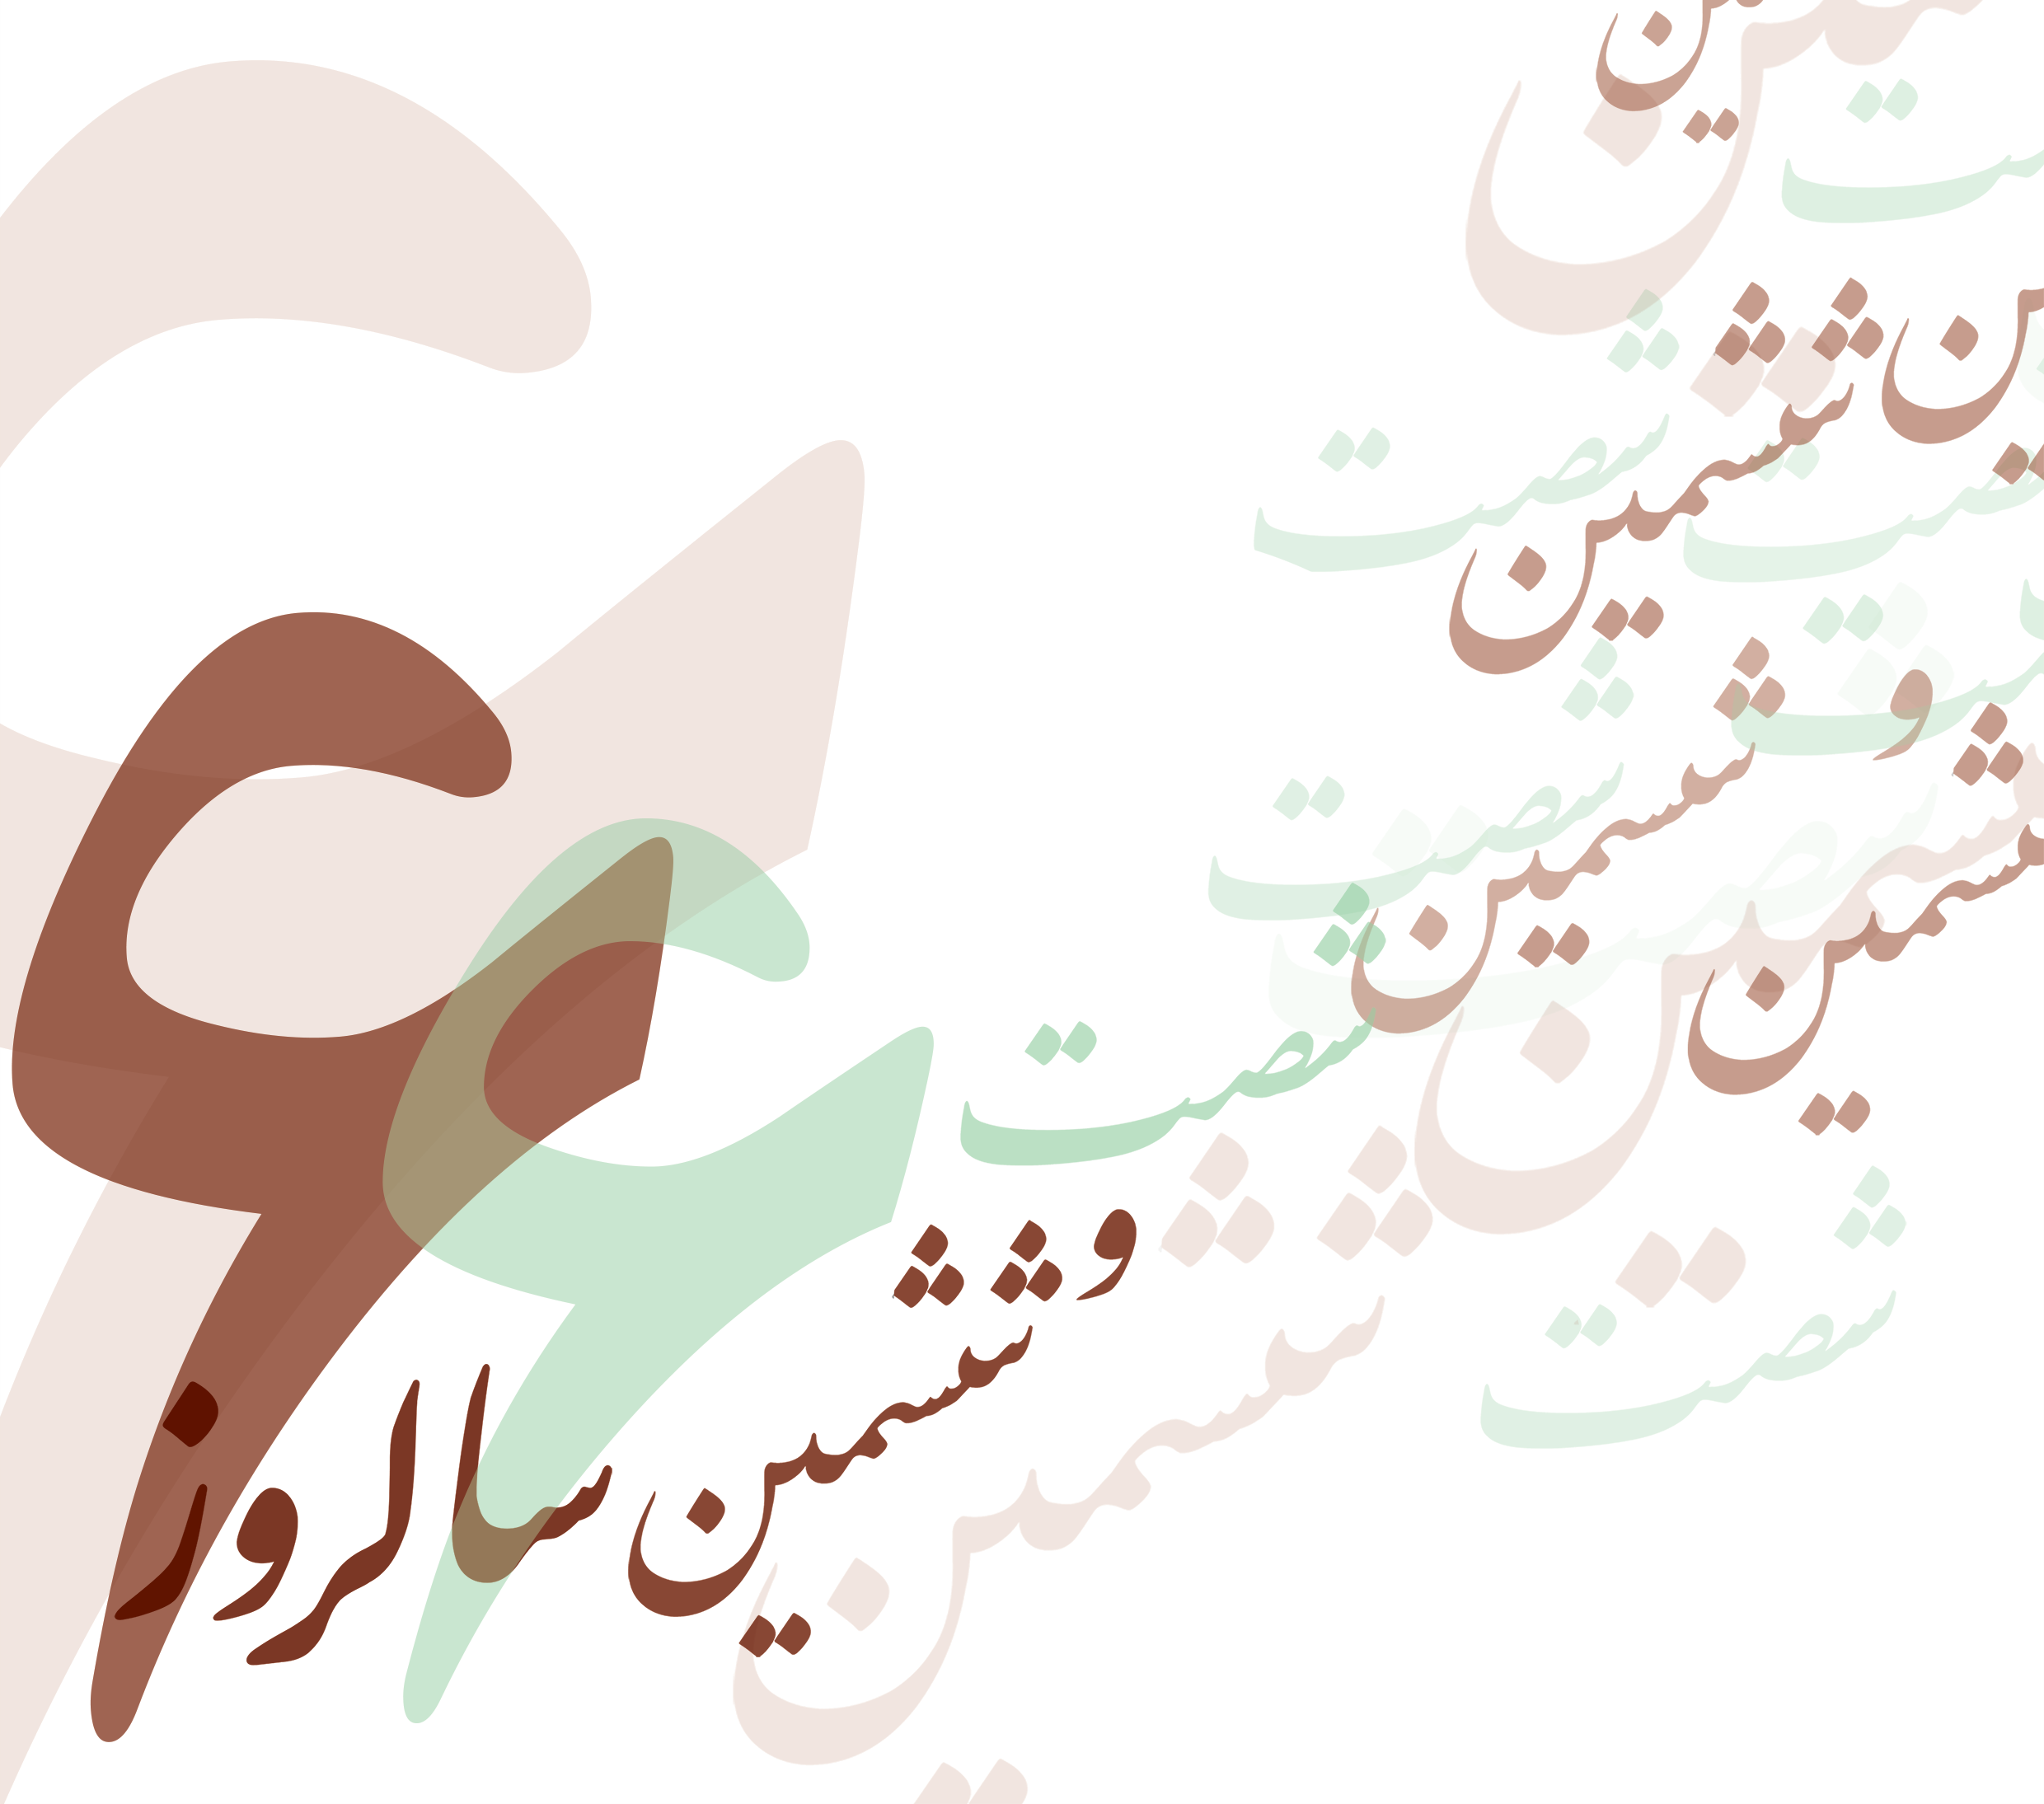 کانون وکلای دادگستری استان اصفهان برگزار می کند: "جشن شصت و ششین سالروز اسقلال کانون وکلای دادگستری و روز وکیل مدافع"